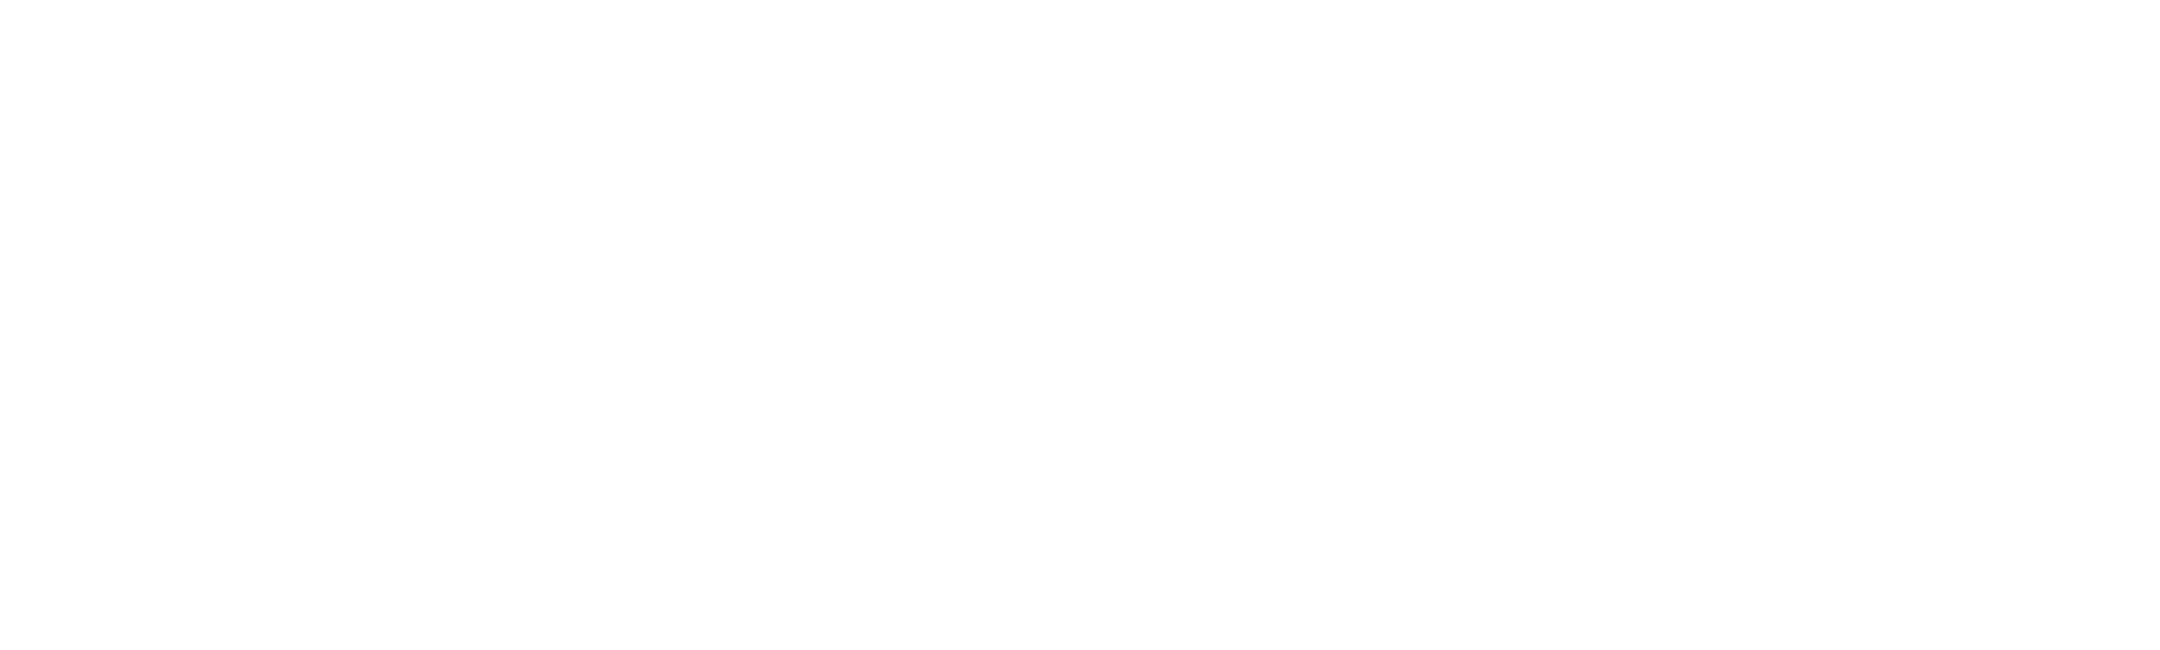 Procesador de Pasarela de Pago de Criptomonedas - FSFPAY.com